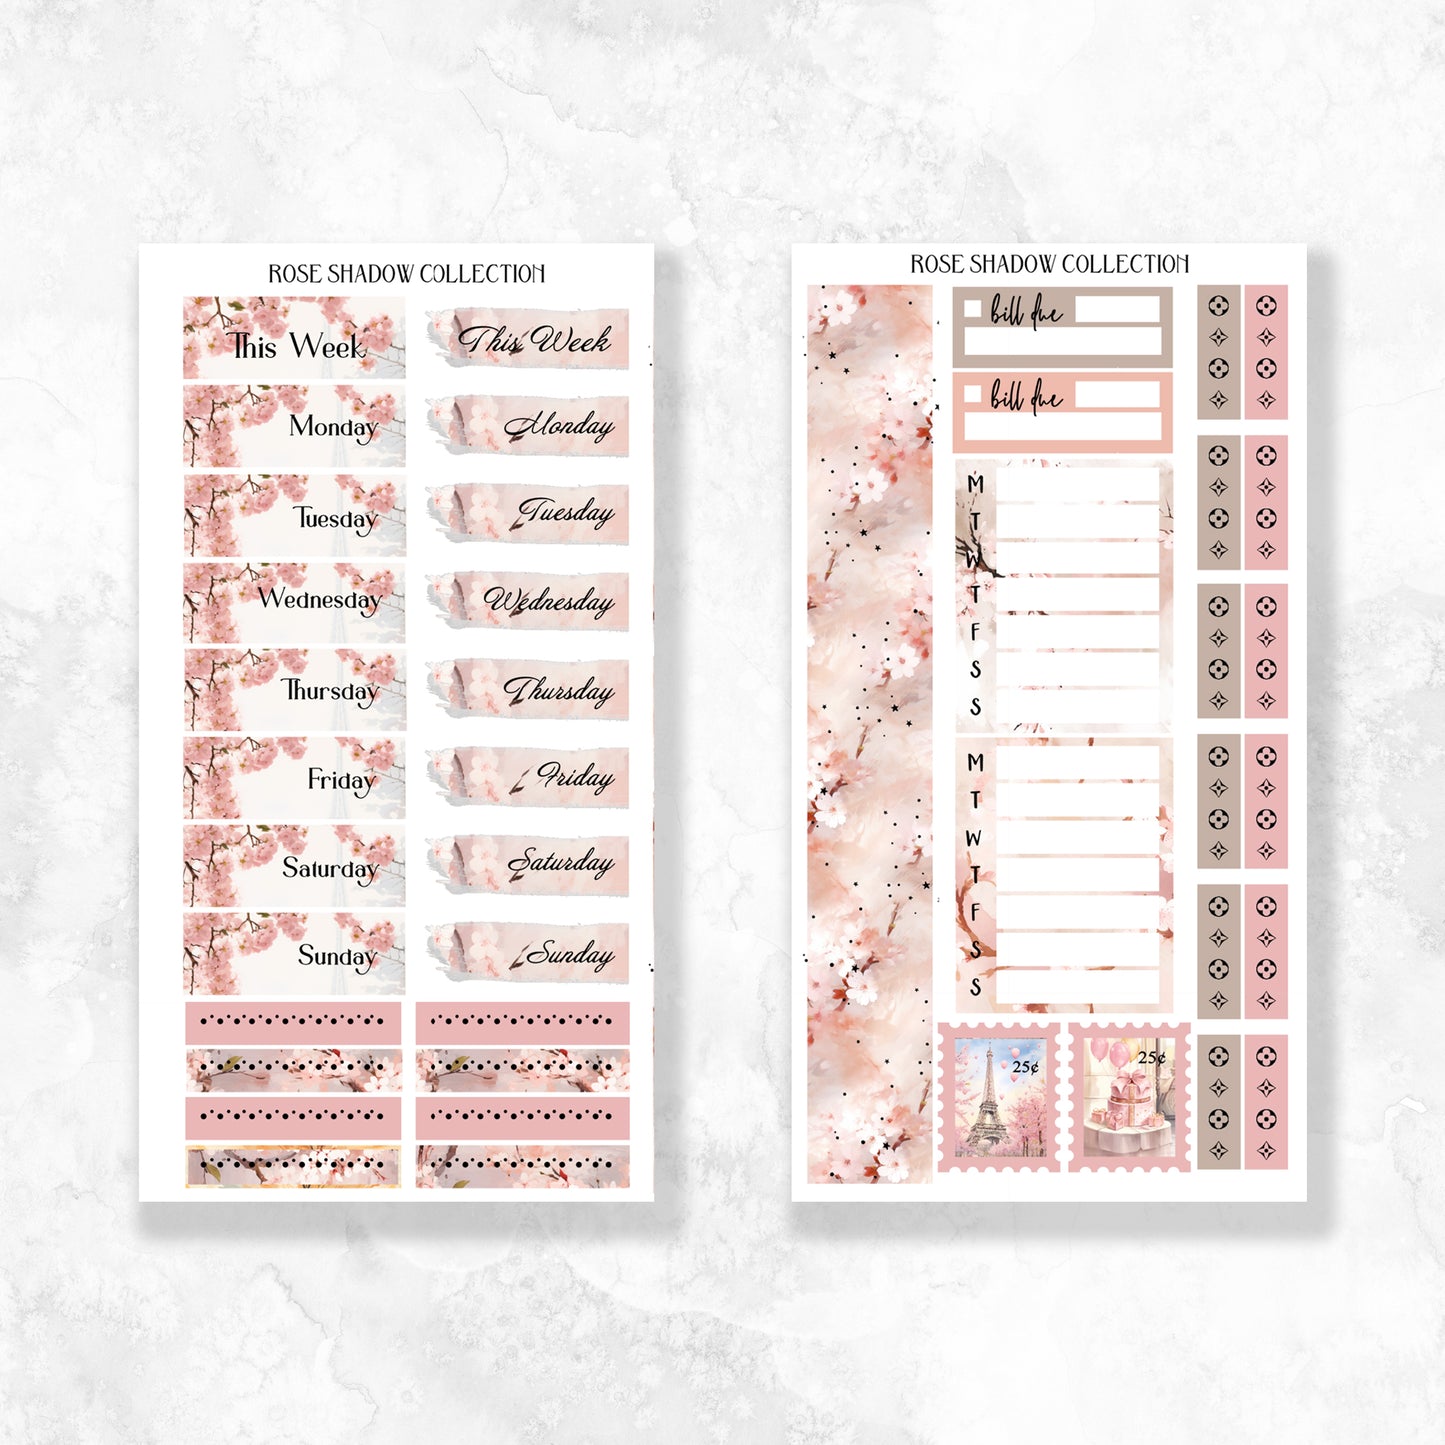 LV Cherry Blossom Exclusive Fashion Sticker Book (VOL 18)